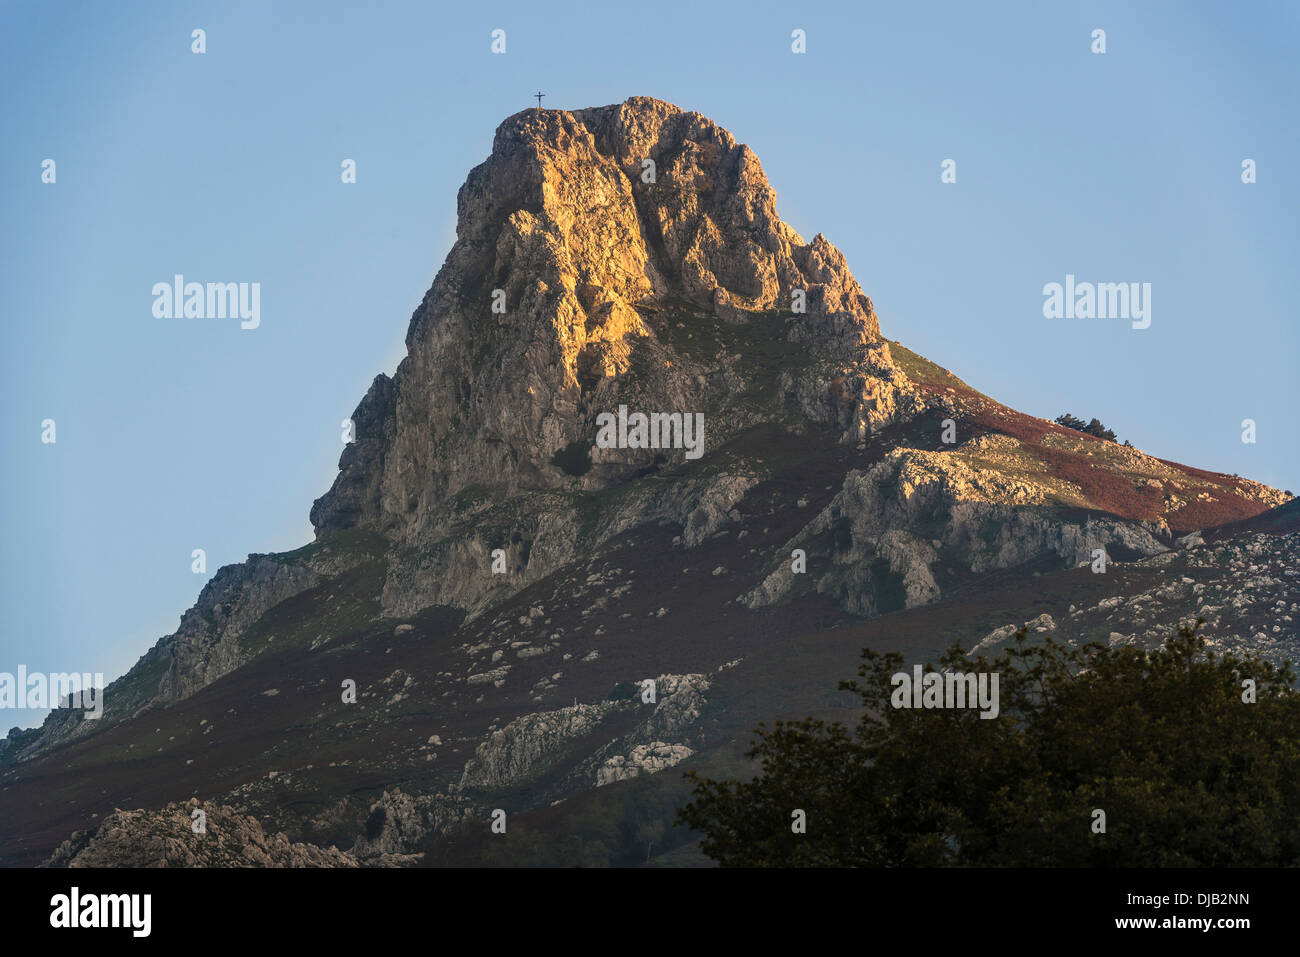 Mt Rocca di Novara, 1340 m, near Novara di Sicilia, Province of Messina, Sicily, Italy Stock Photo